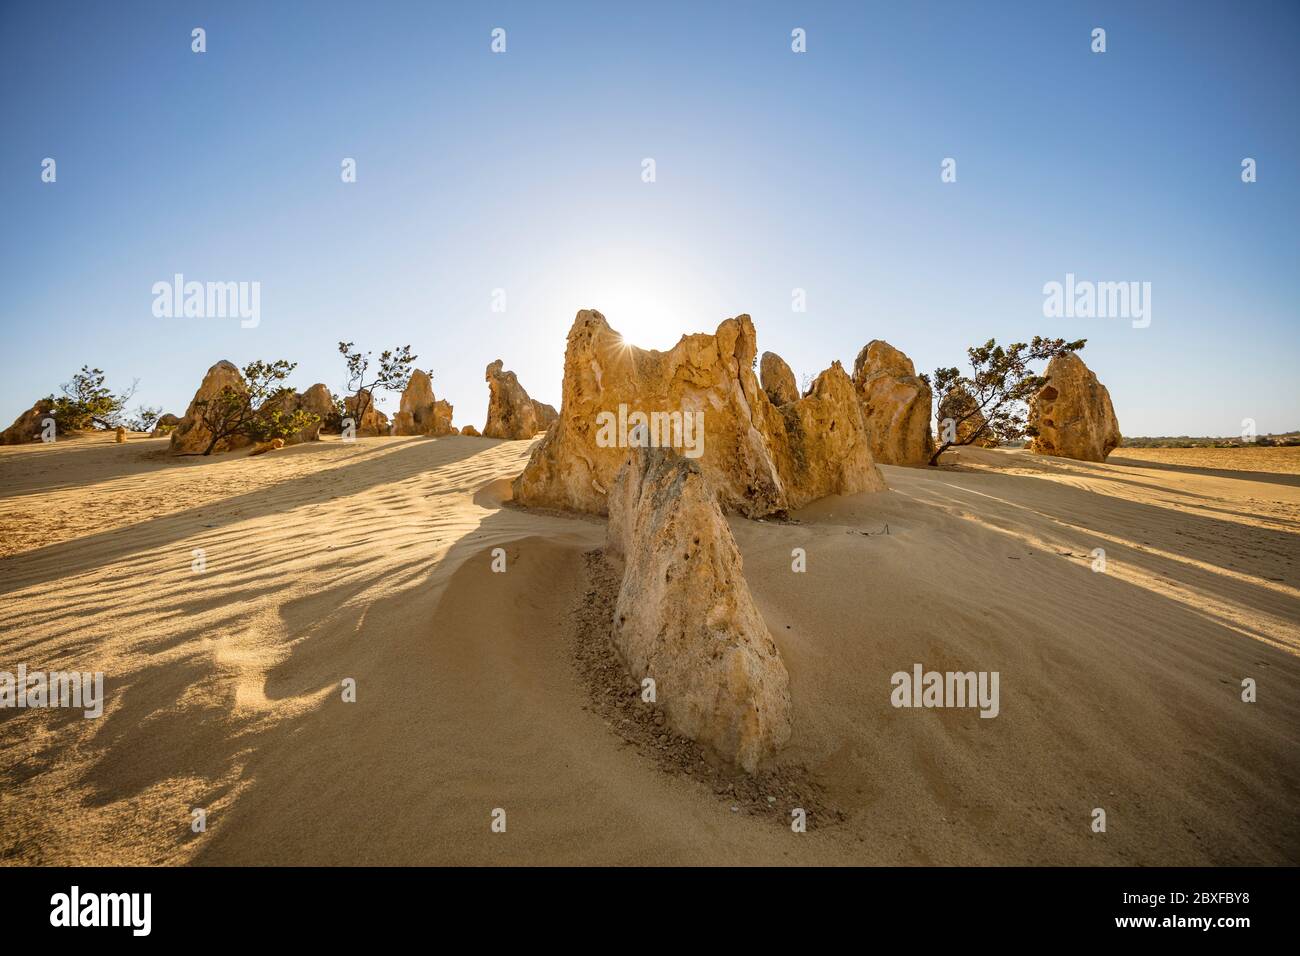 Formazioni rocciose calcaree retroilluminate conosciute come i Pinnacoli nel parco nazionale di Nambung nell'Australia occidentale Foto Stock